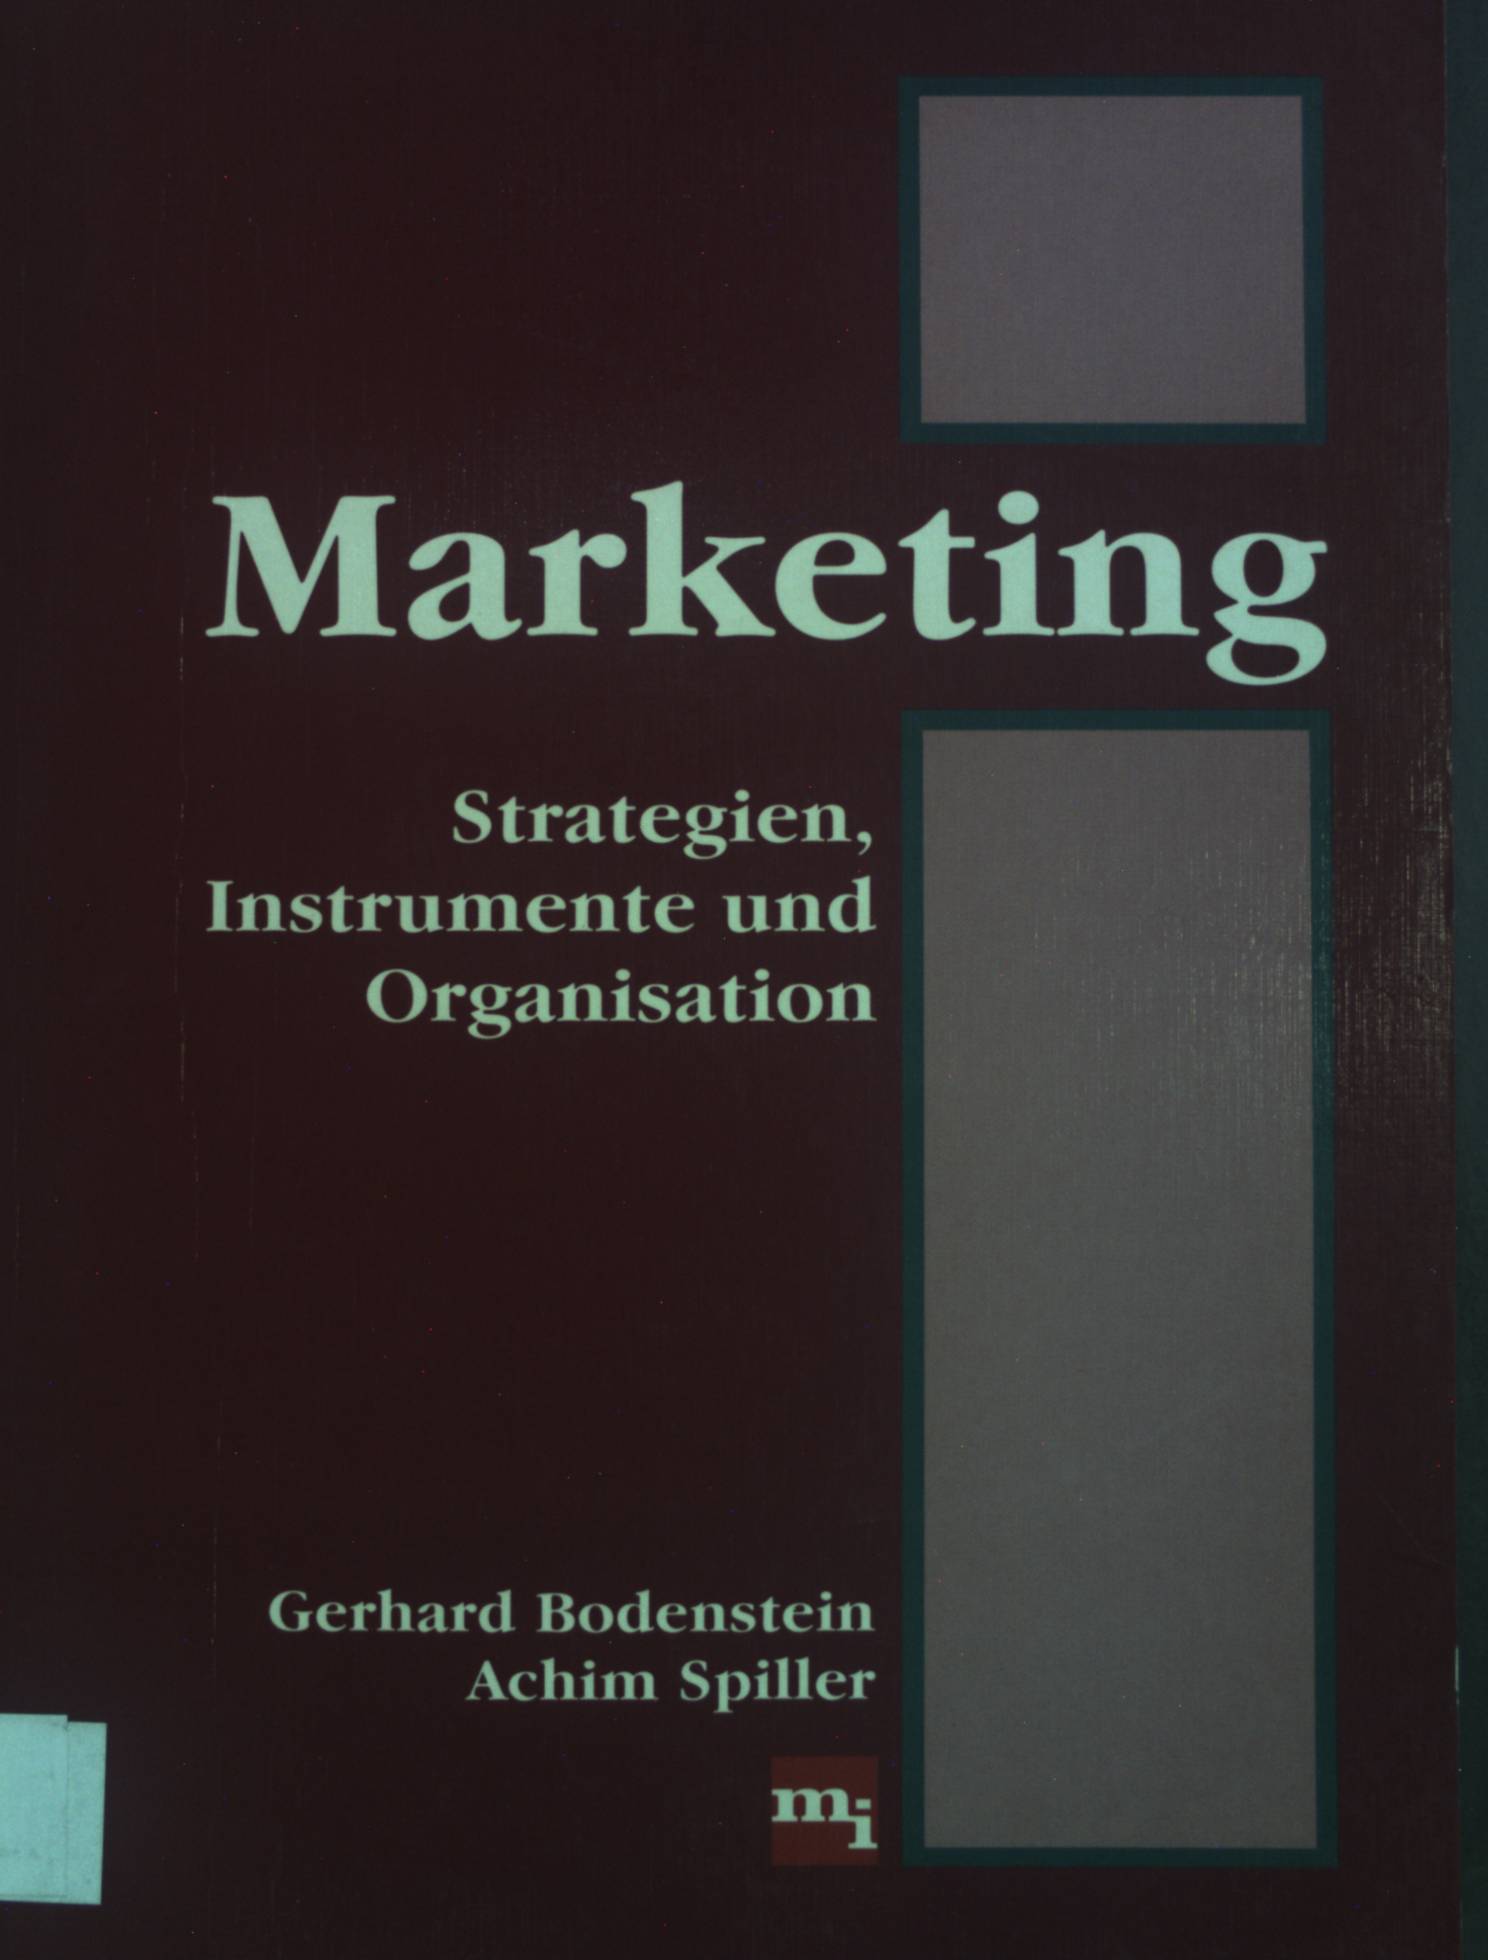 Marketing : Strategien, Instrumente und Organisastion. - Bodenstein, Gerhard und Achim Spiller